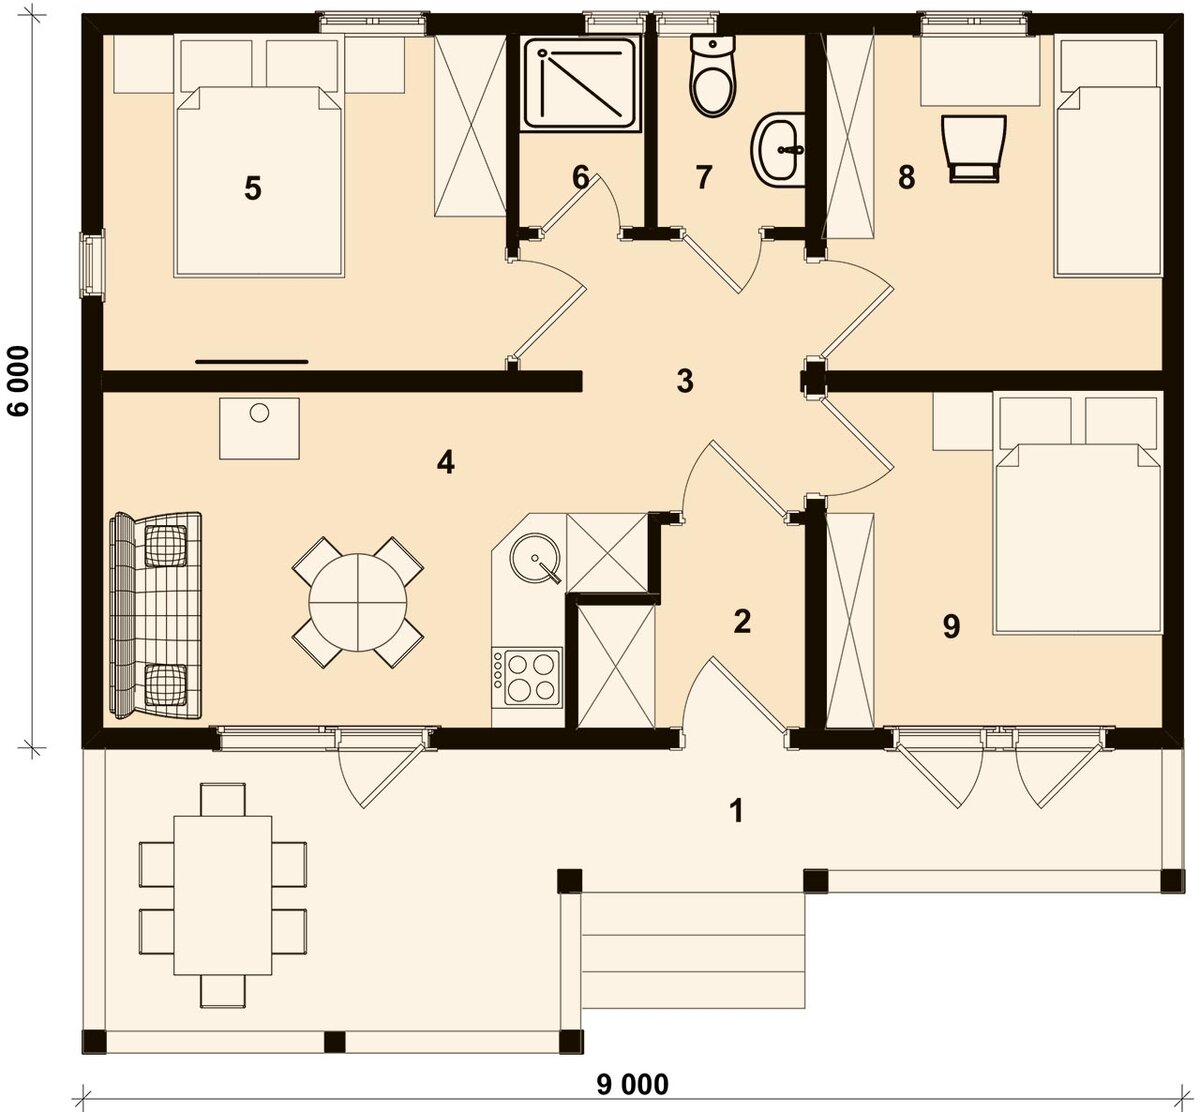 ВЯЗЬМИЧ 45 м2 - проект маленького одноэтажного дома 6х9 на три спальни,  дачи или бани | Инваполис - проекты рациональных домов | Дзен